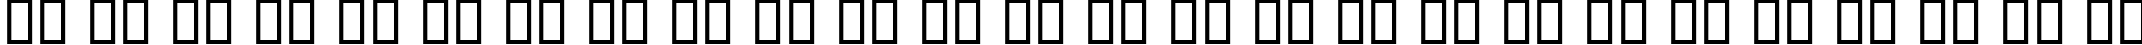 Пример написания английского алфавита шрифтом B Arabic Style